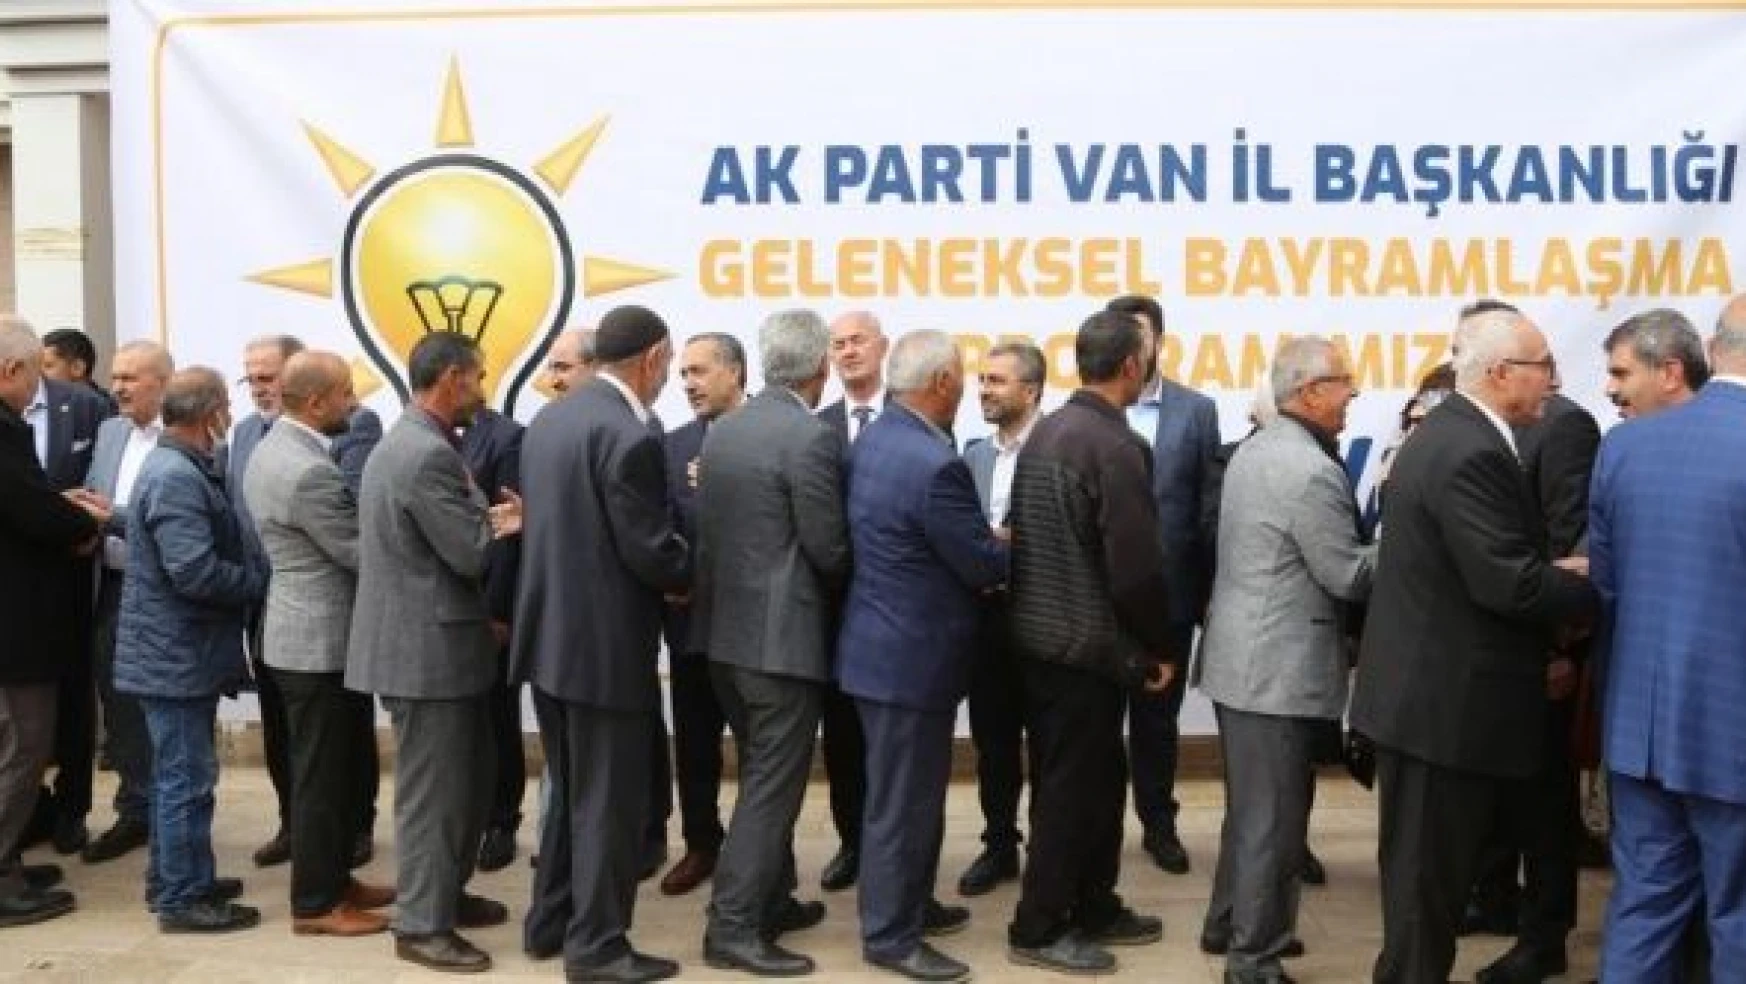 Van'da AK Parti İl Başkanlığı bayramlaşma programı düzenlendi